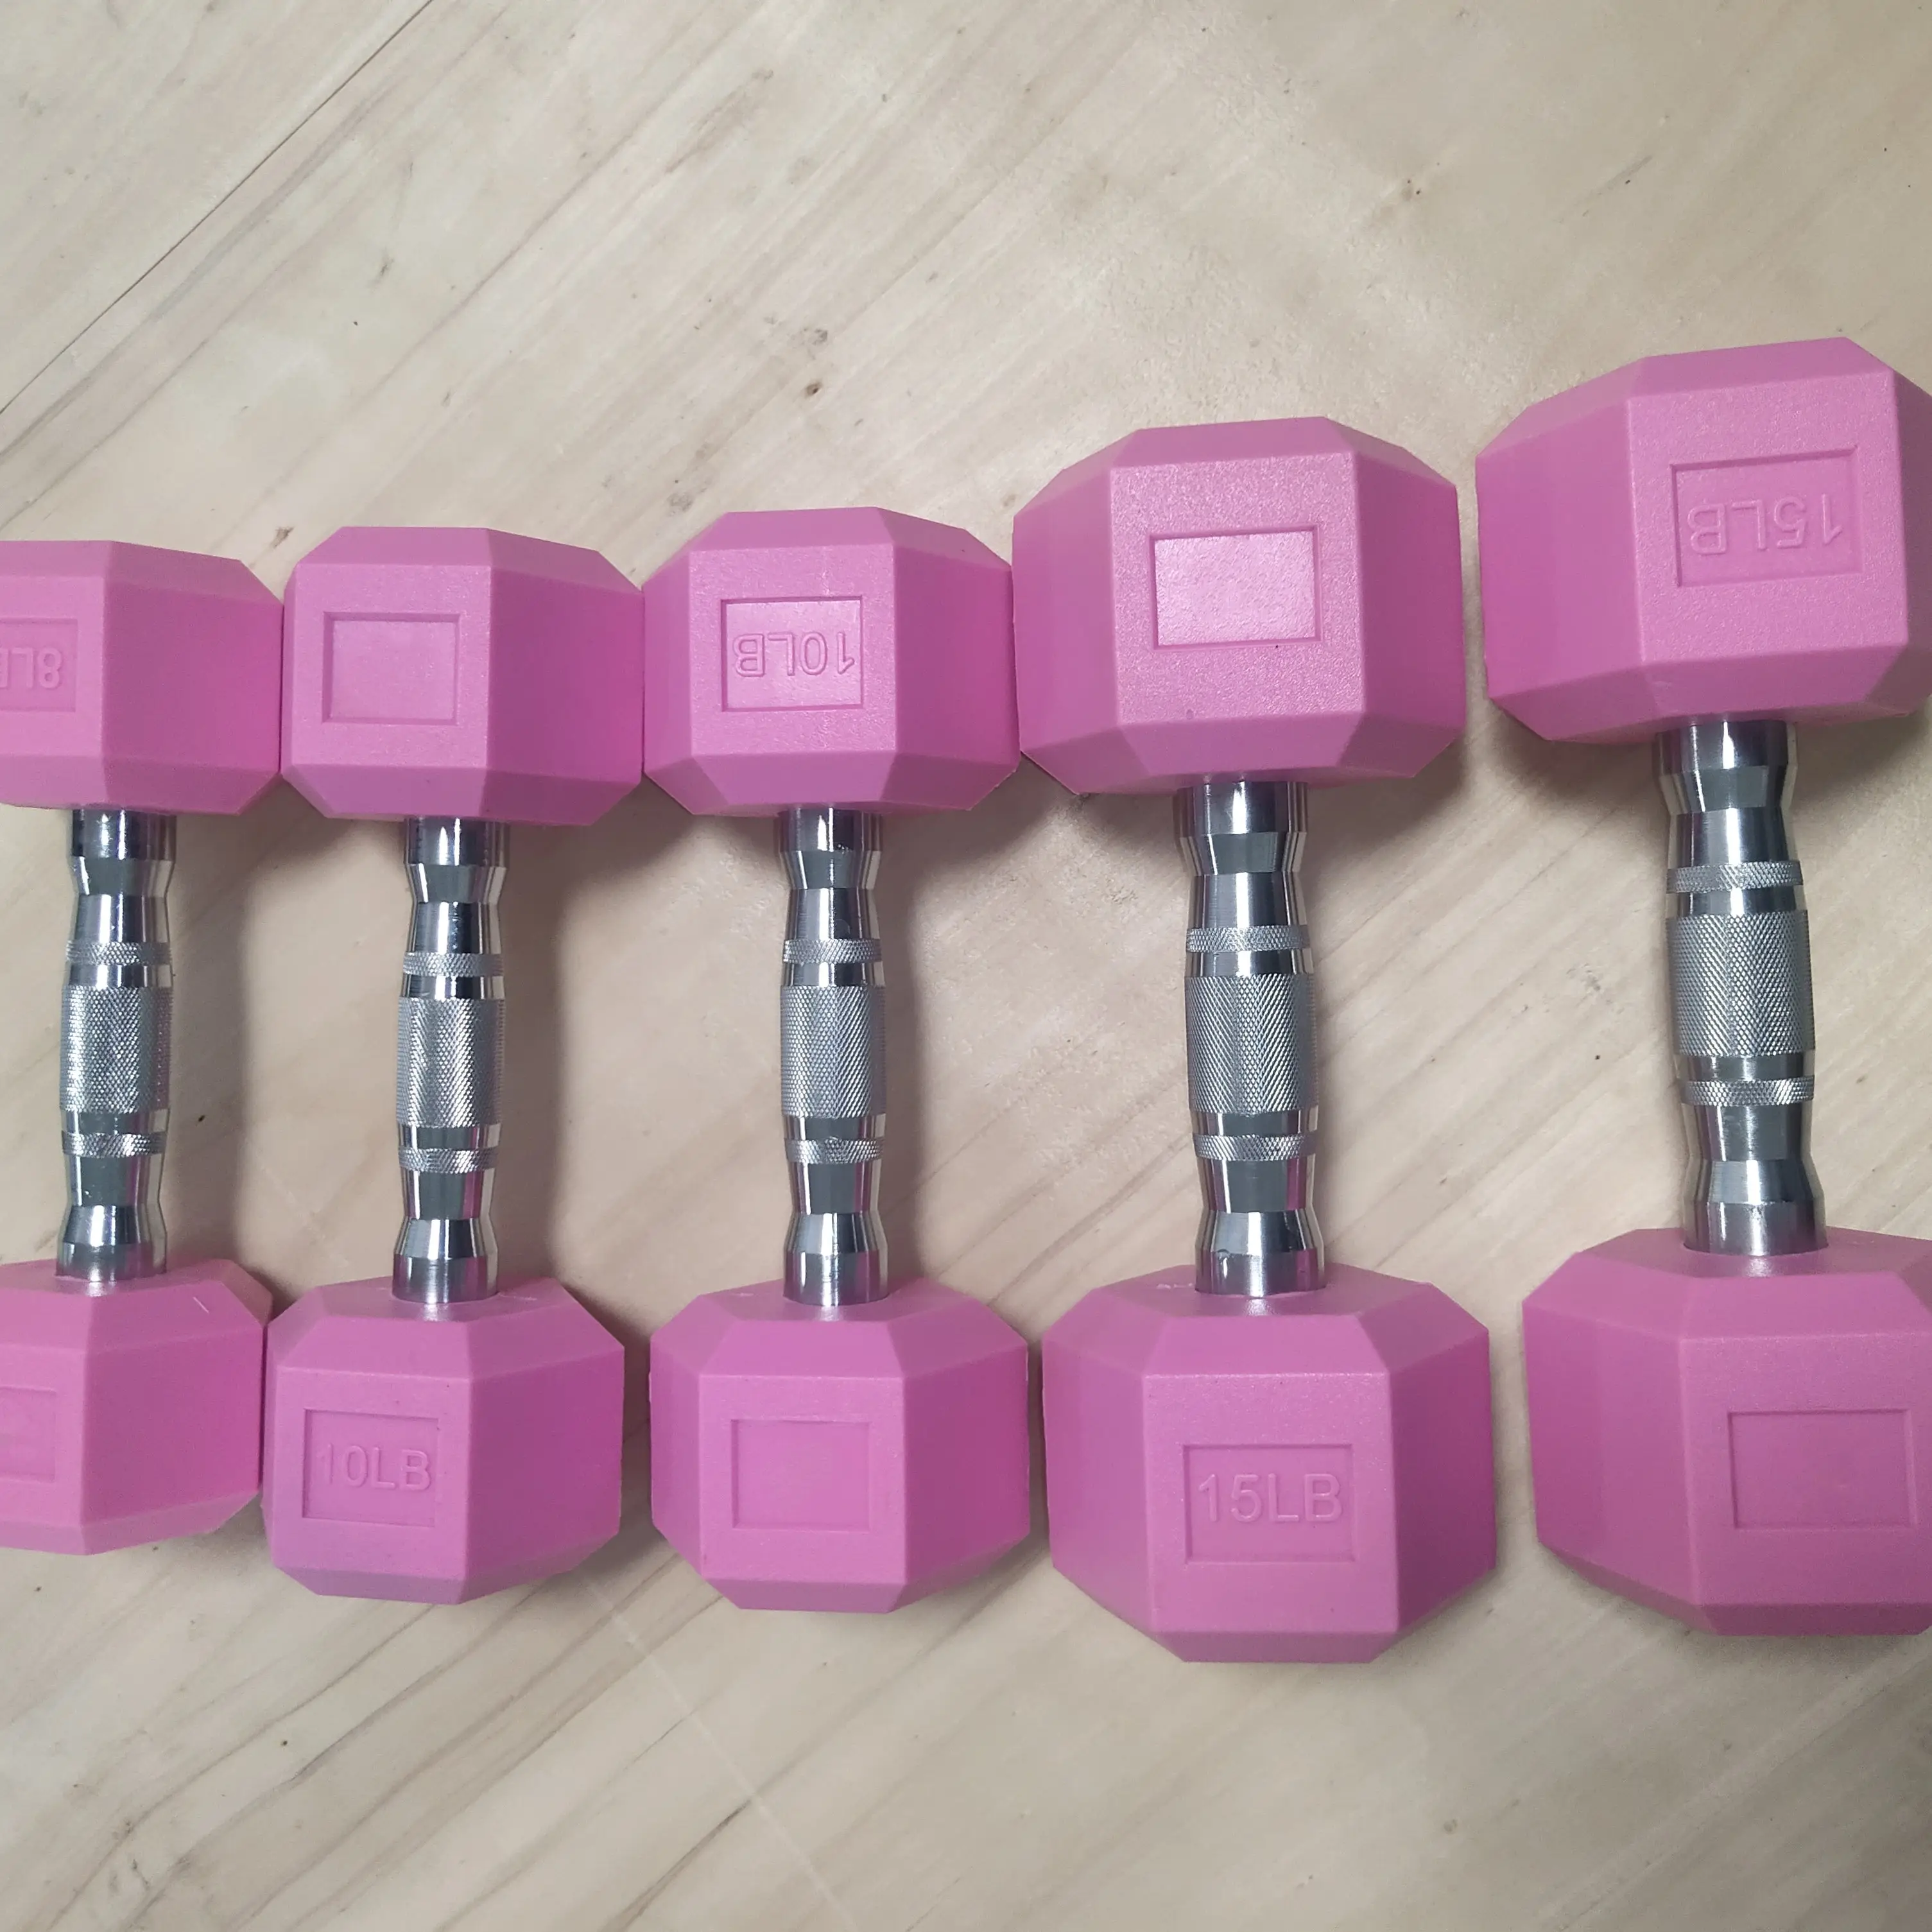 1 주 배송 세련된 pvc 플라스틱 육각 무게 운동 장비 4 kg 컬러 세트 핑크 컬러 아령 판매